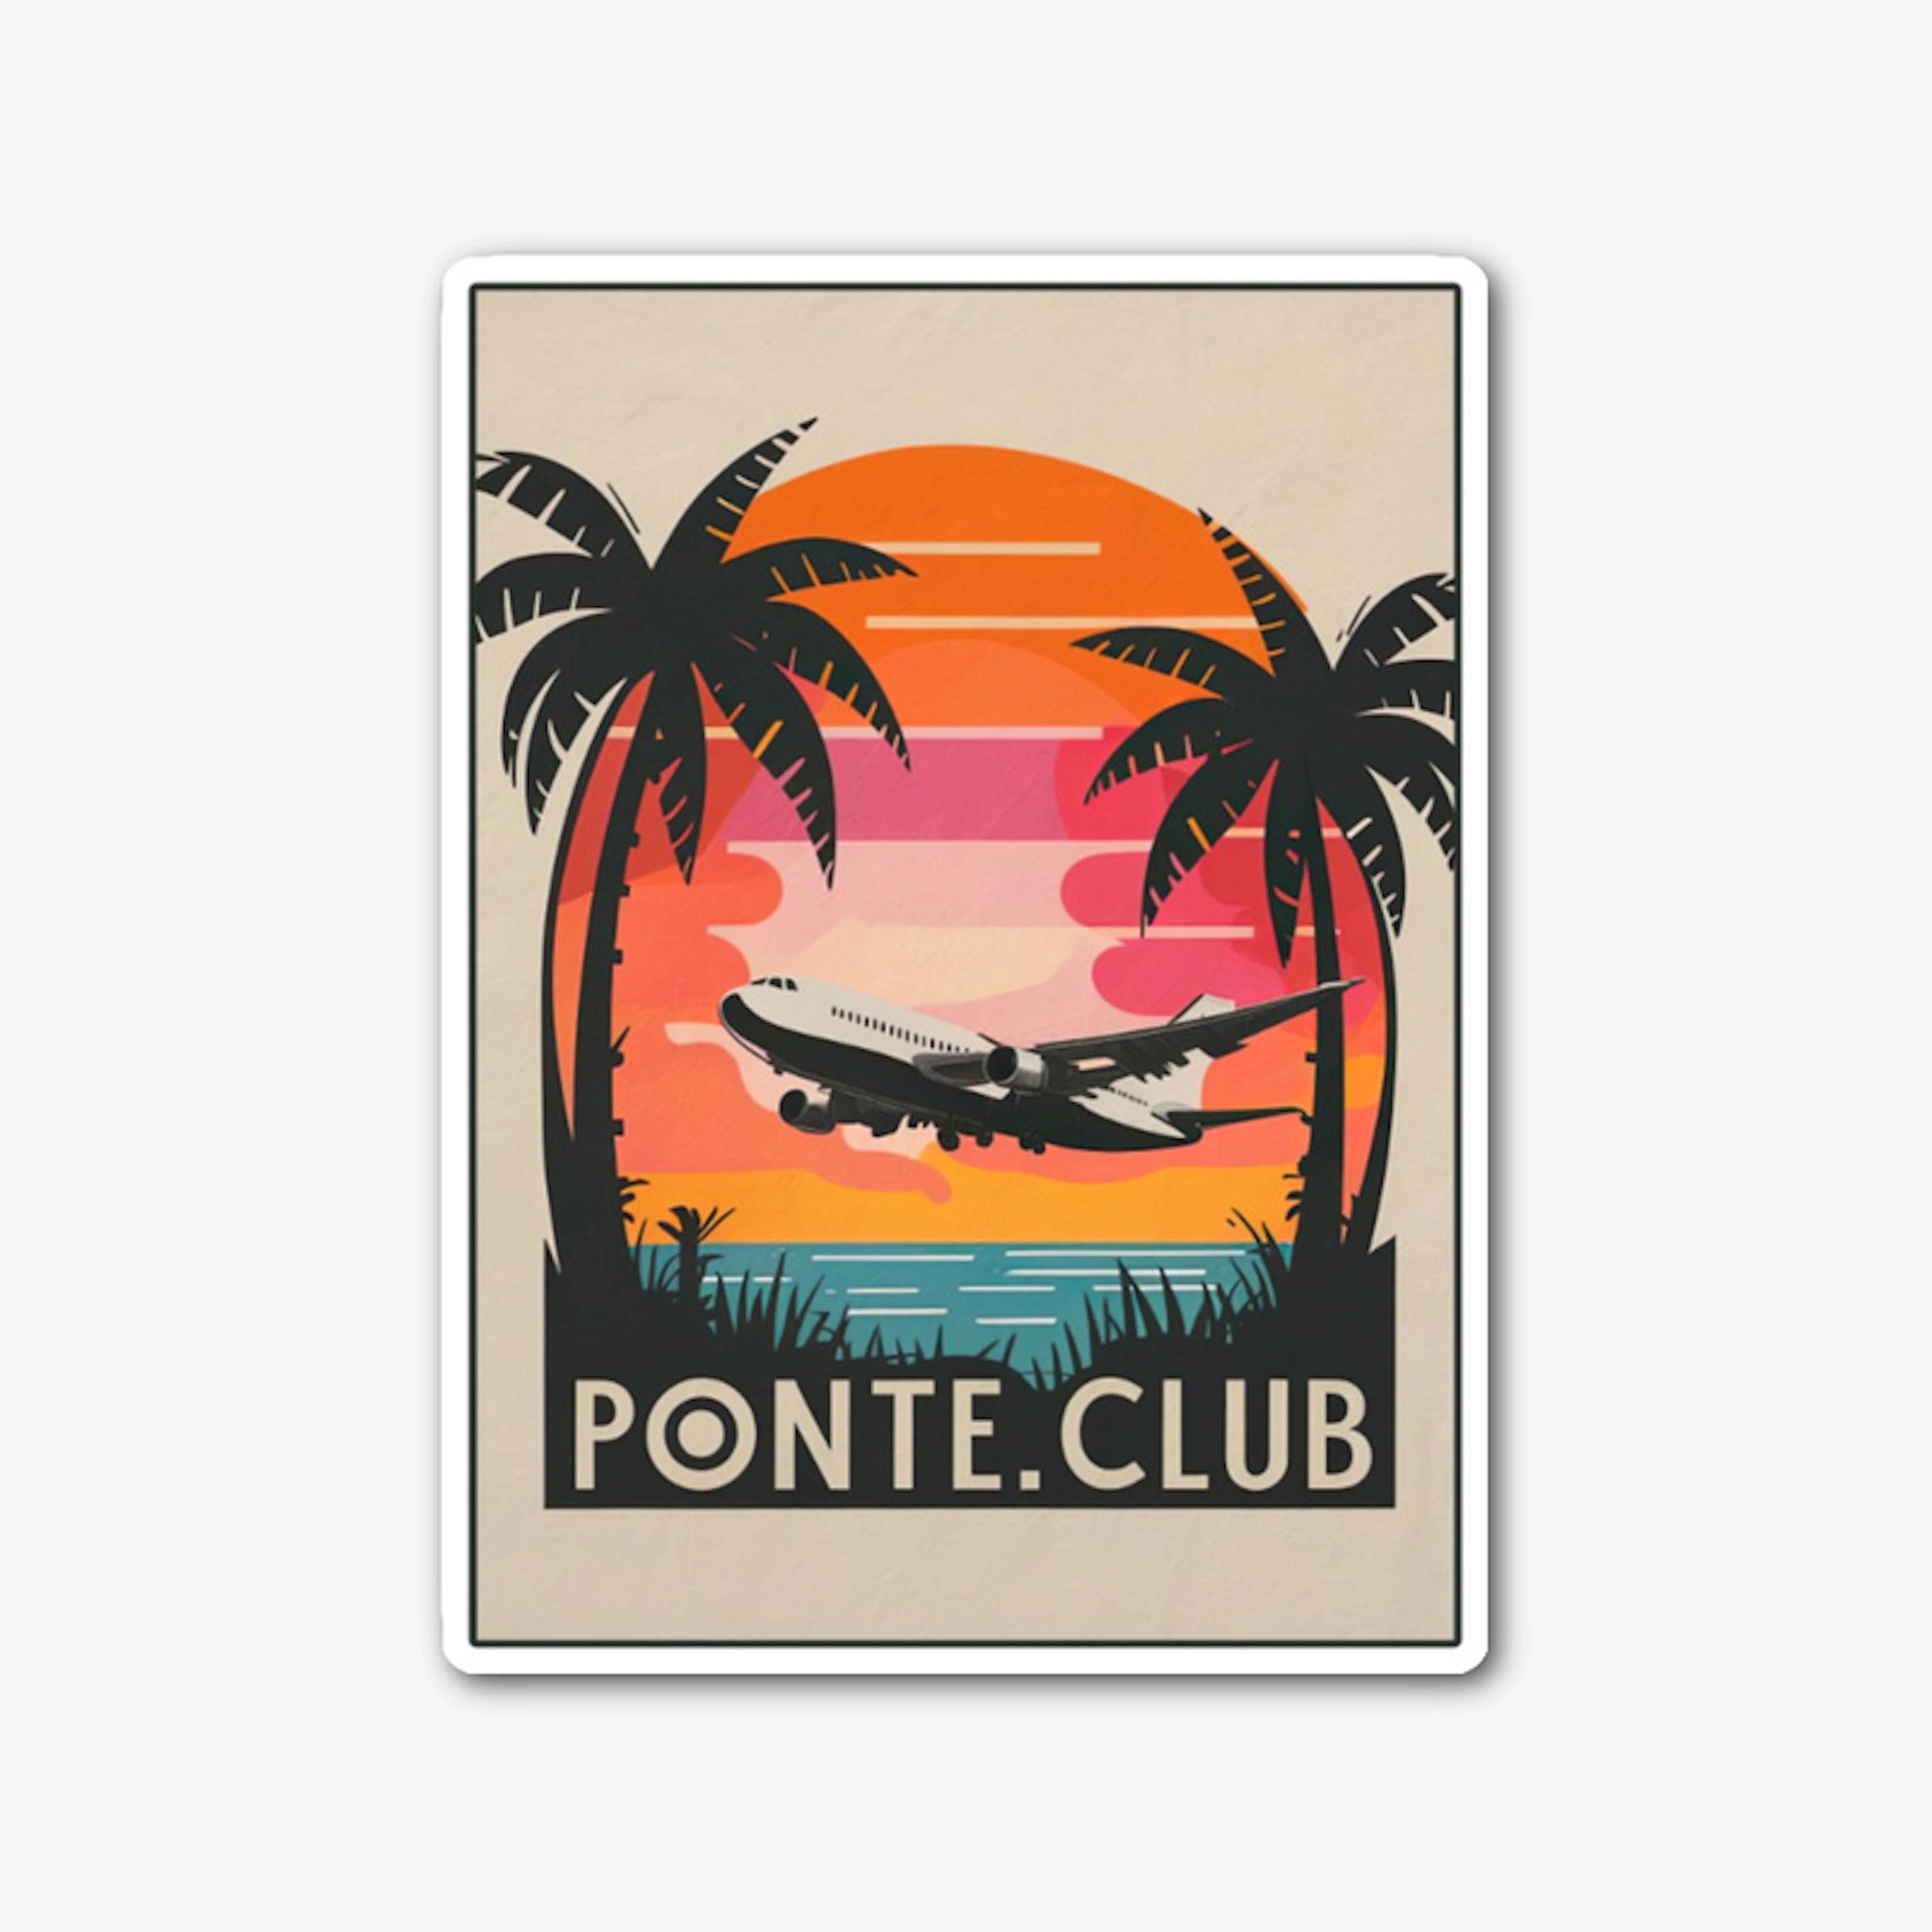 Ponte.Club